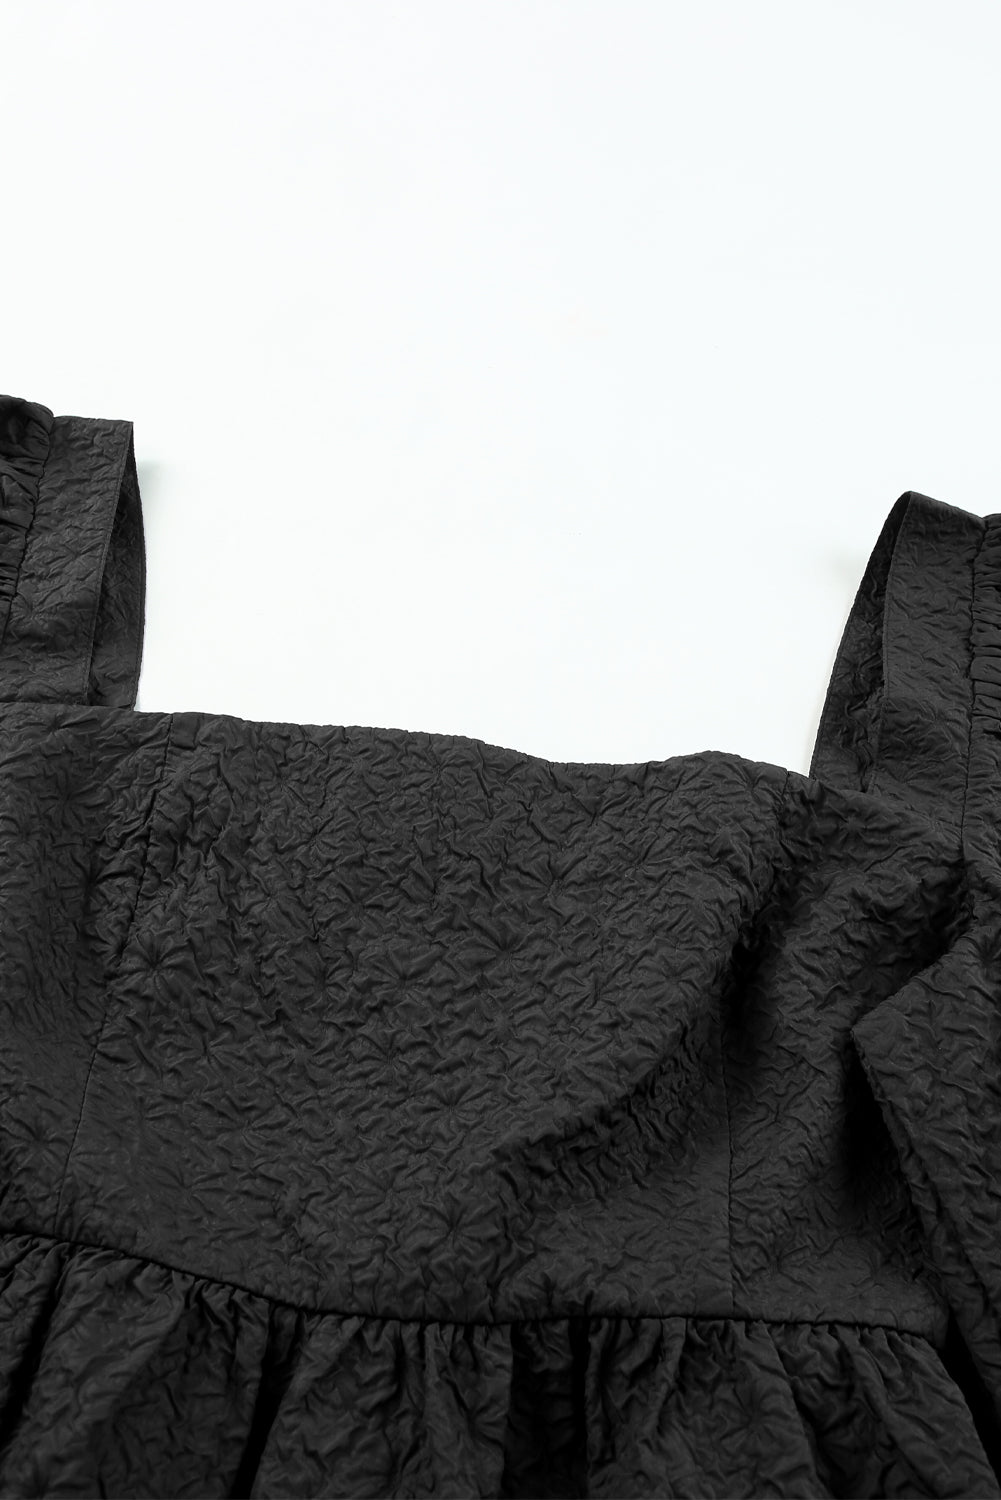 Schwarze, strukturierte Bluse mit eckigem Ausschnitt, Puffärmeln und Schößchen